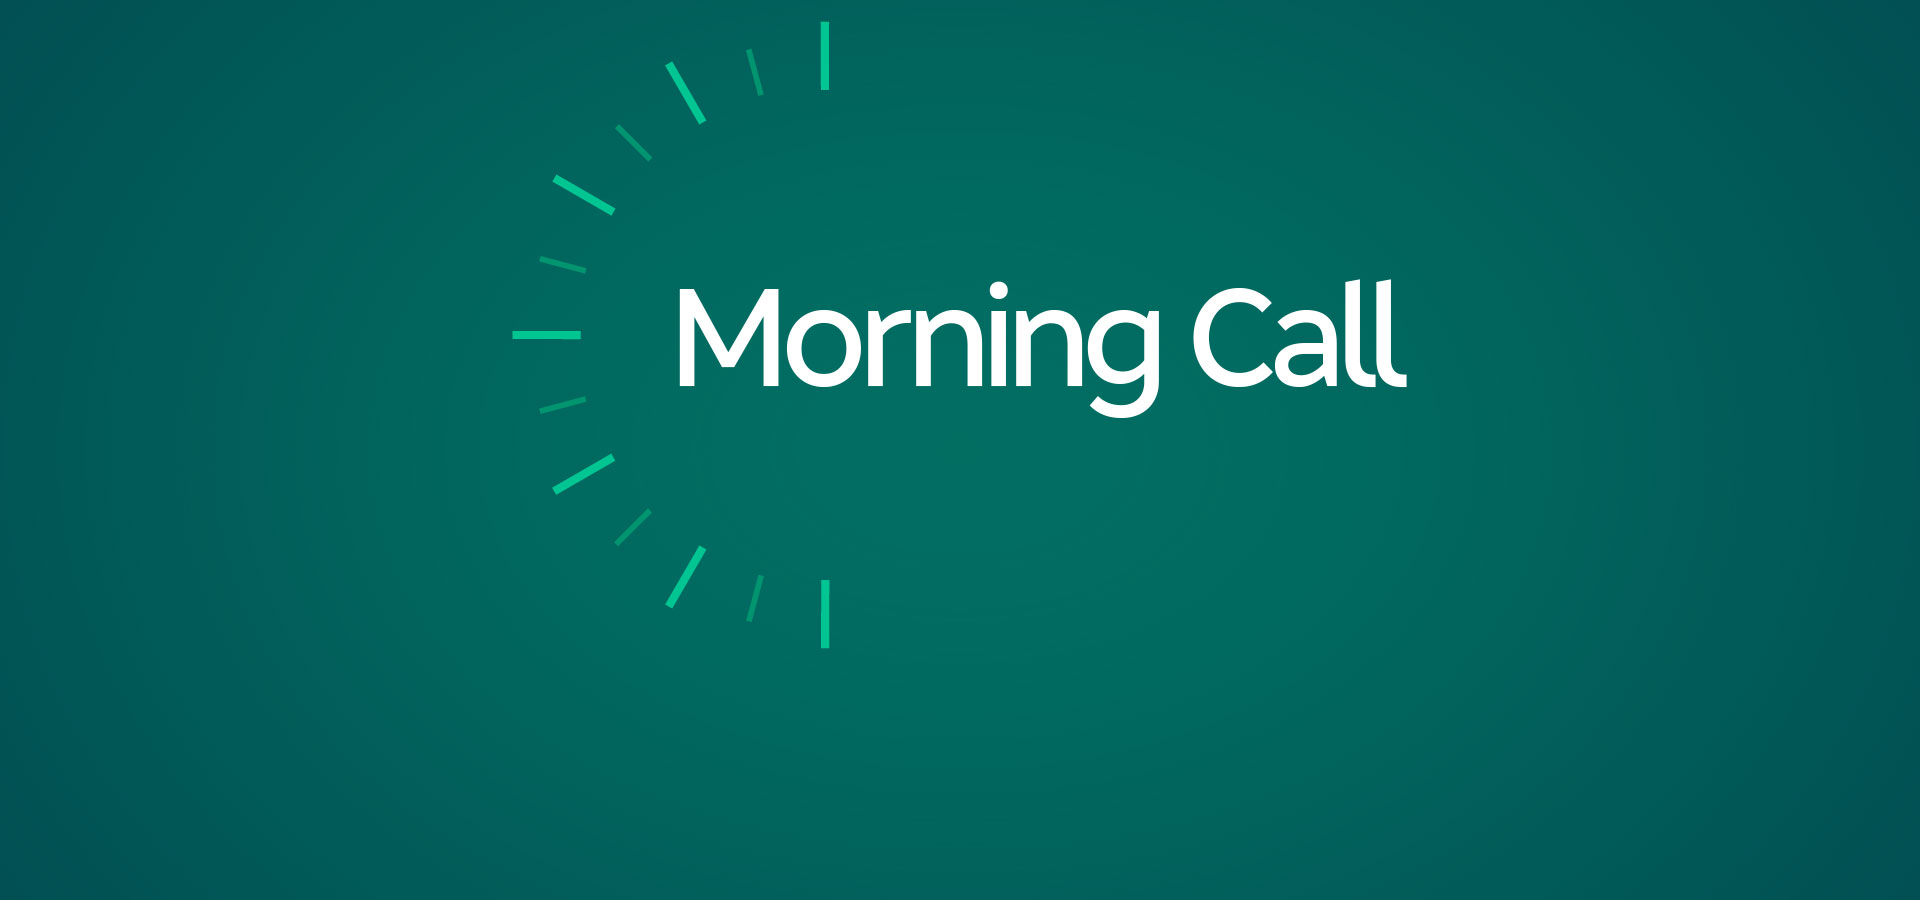 Morning Call – Day Trade e Swing Trade ao Vivo – Análise Gráfica - Índice, Dólar, Ações – 27/03